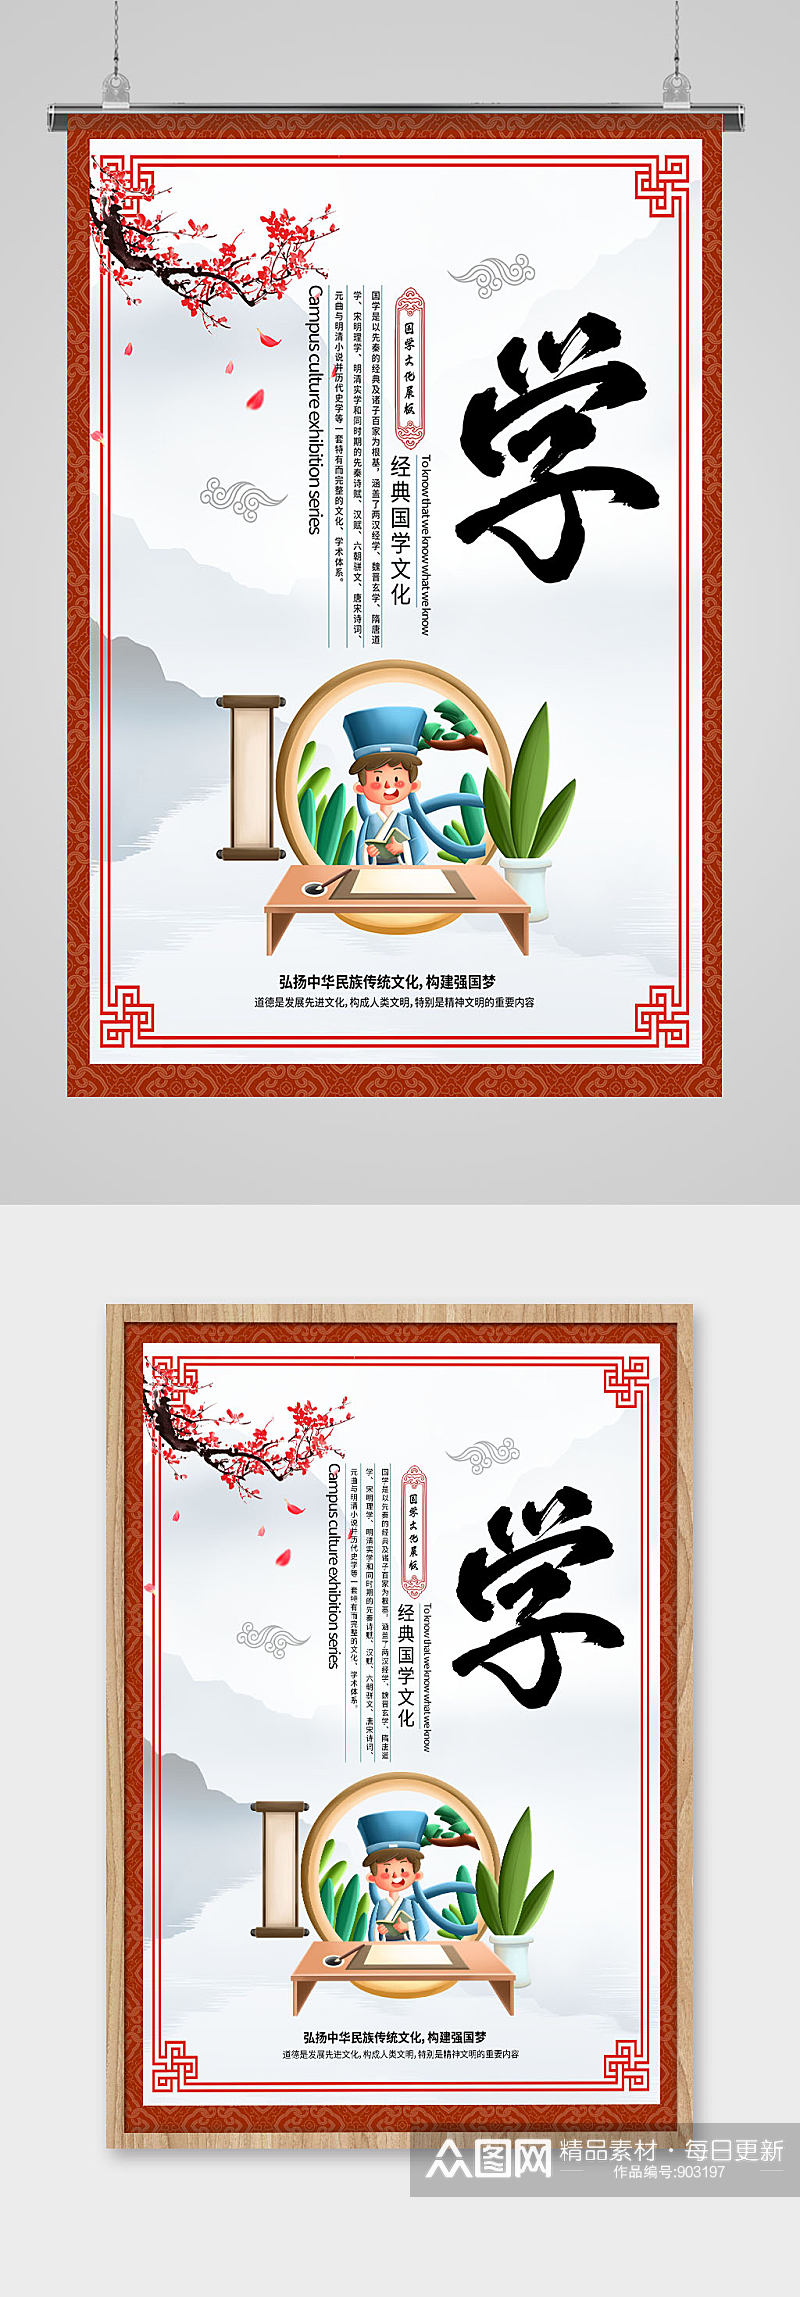 中国国学文化海报素材